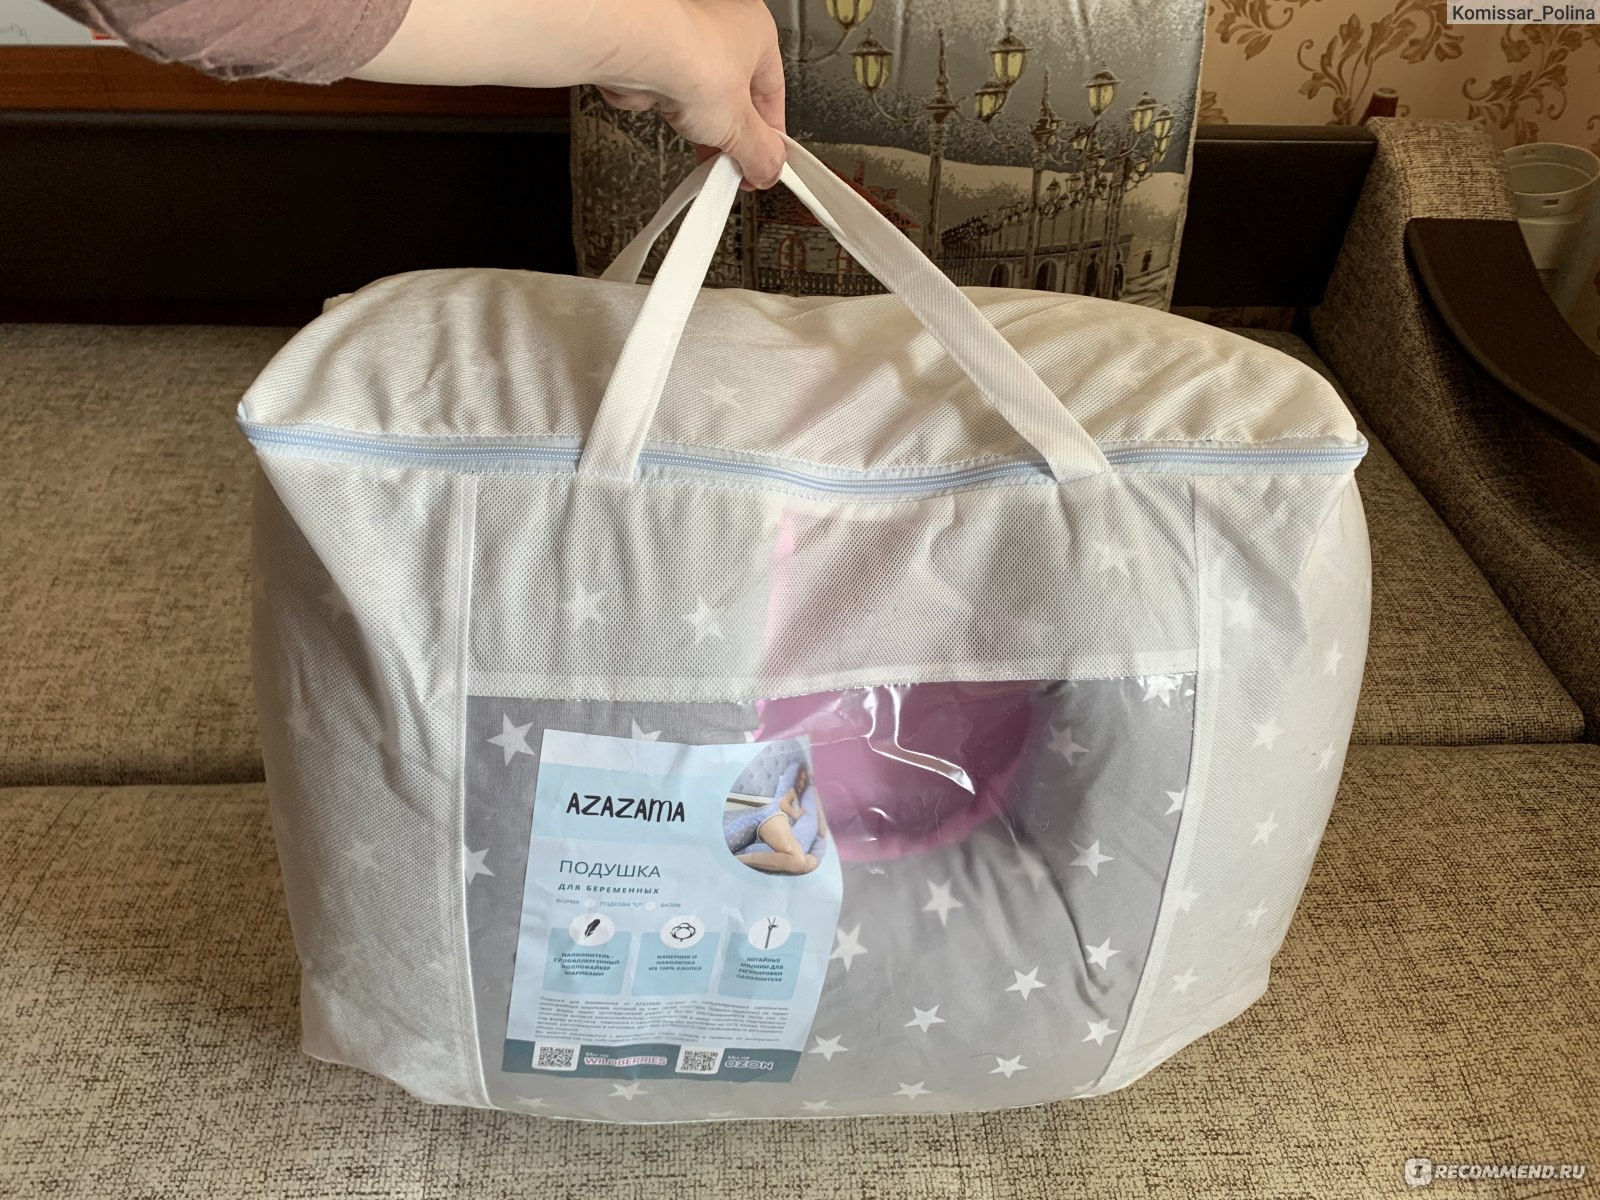 Подушка для беременных и кормления Azazama Baby Born U 340 см, со съемной наволочкой, сумка чехол фото